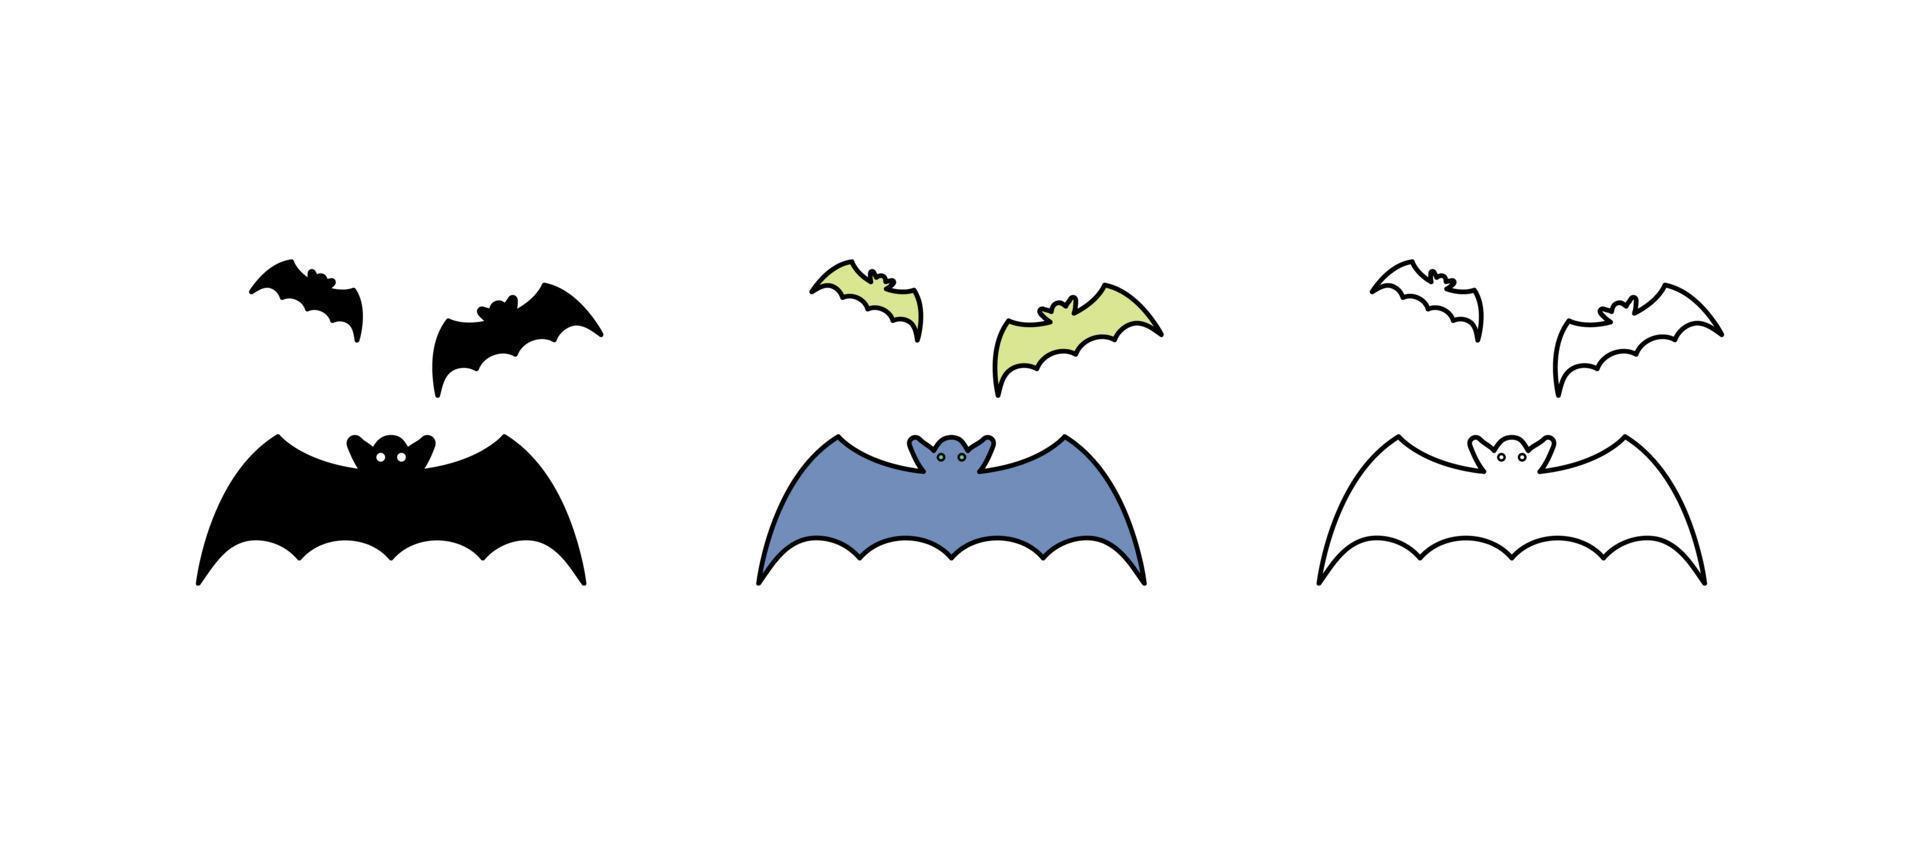 morcegos voando no ícone do ar. conjunto adequado para o conceito de halloween. é um conjunto de ícones coloridos, silhuetas e lineares. vetor